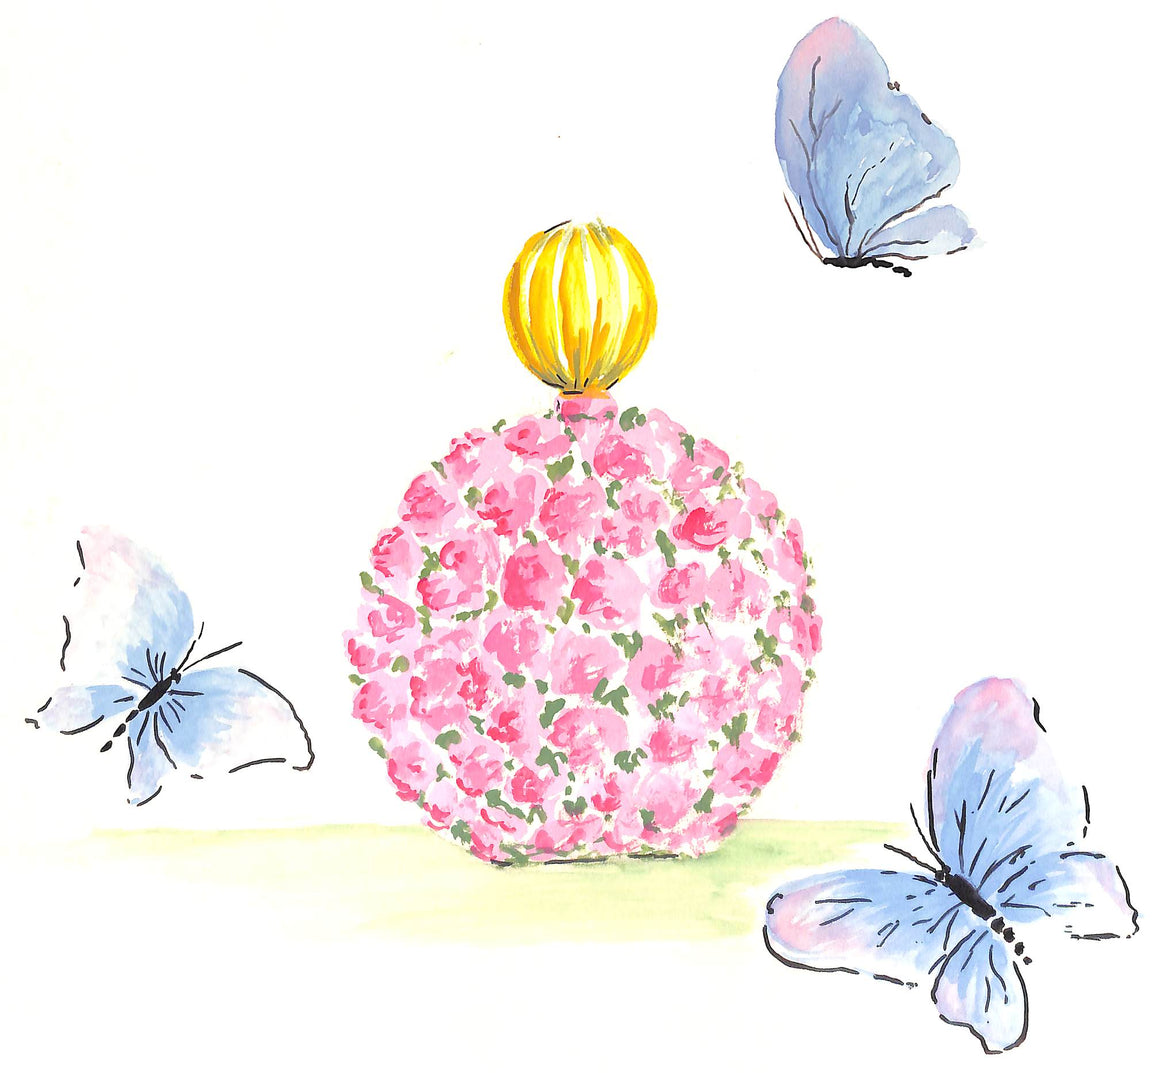 Lanvin Paris Floral Perfume Bottle w/ Butterflies Reversing To Pink Bouquet Artwork